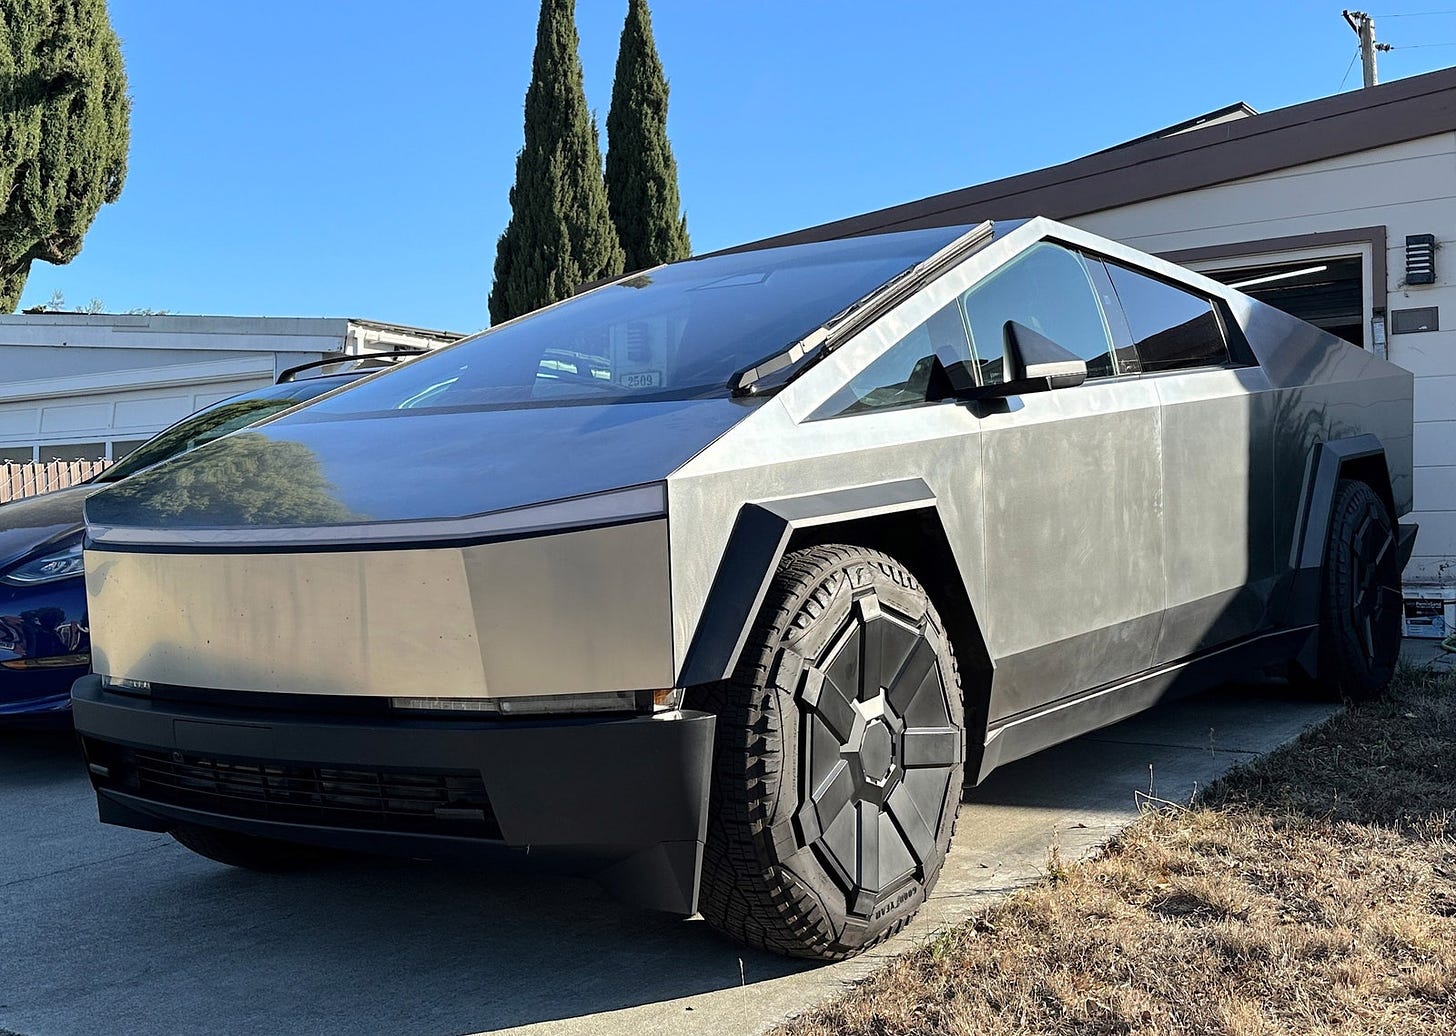 Tesla Cybertruck parked in a driveway